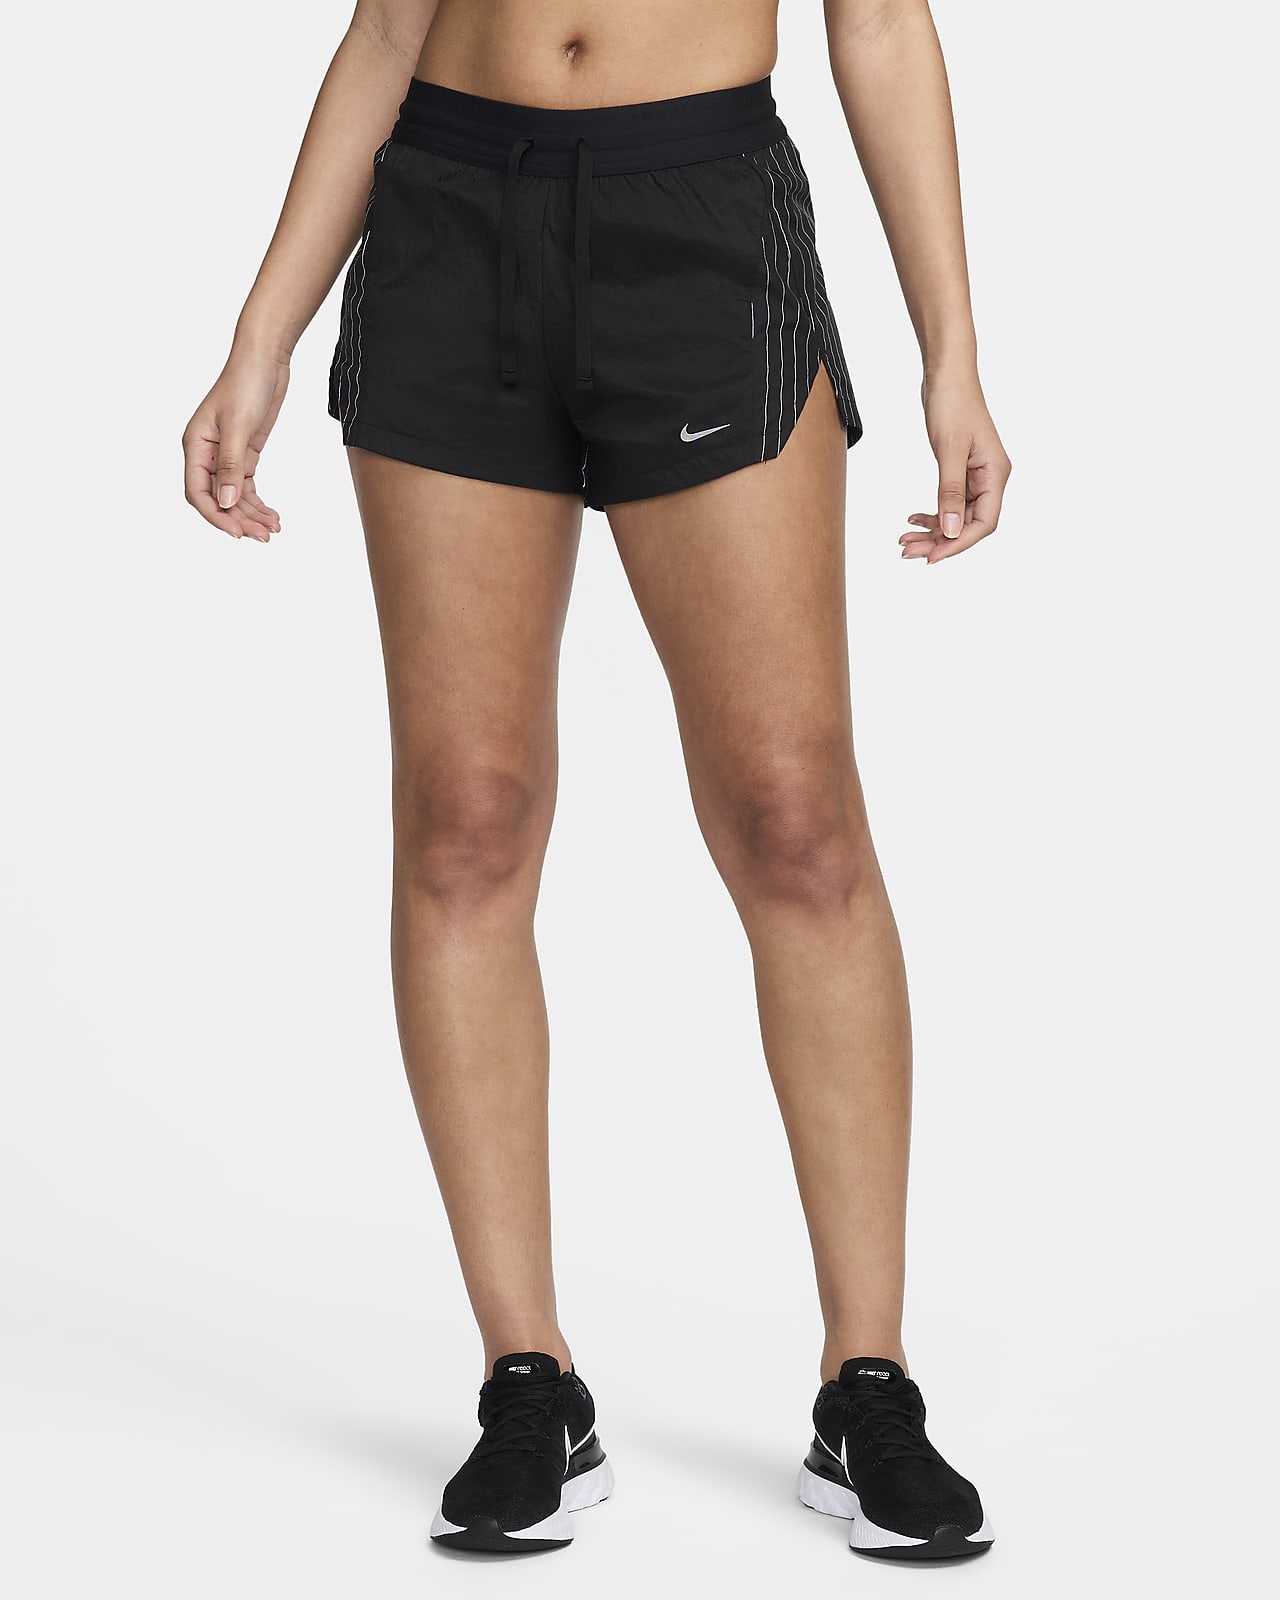 Nike Running Division Normal Belli Slip Astarlı 8 cm Kadın Koşu Şortu